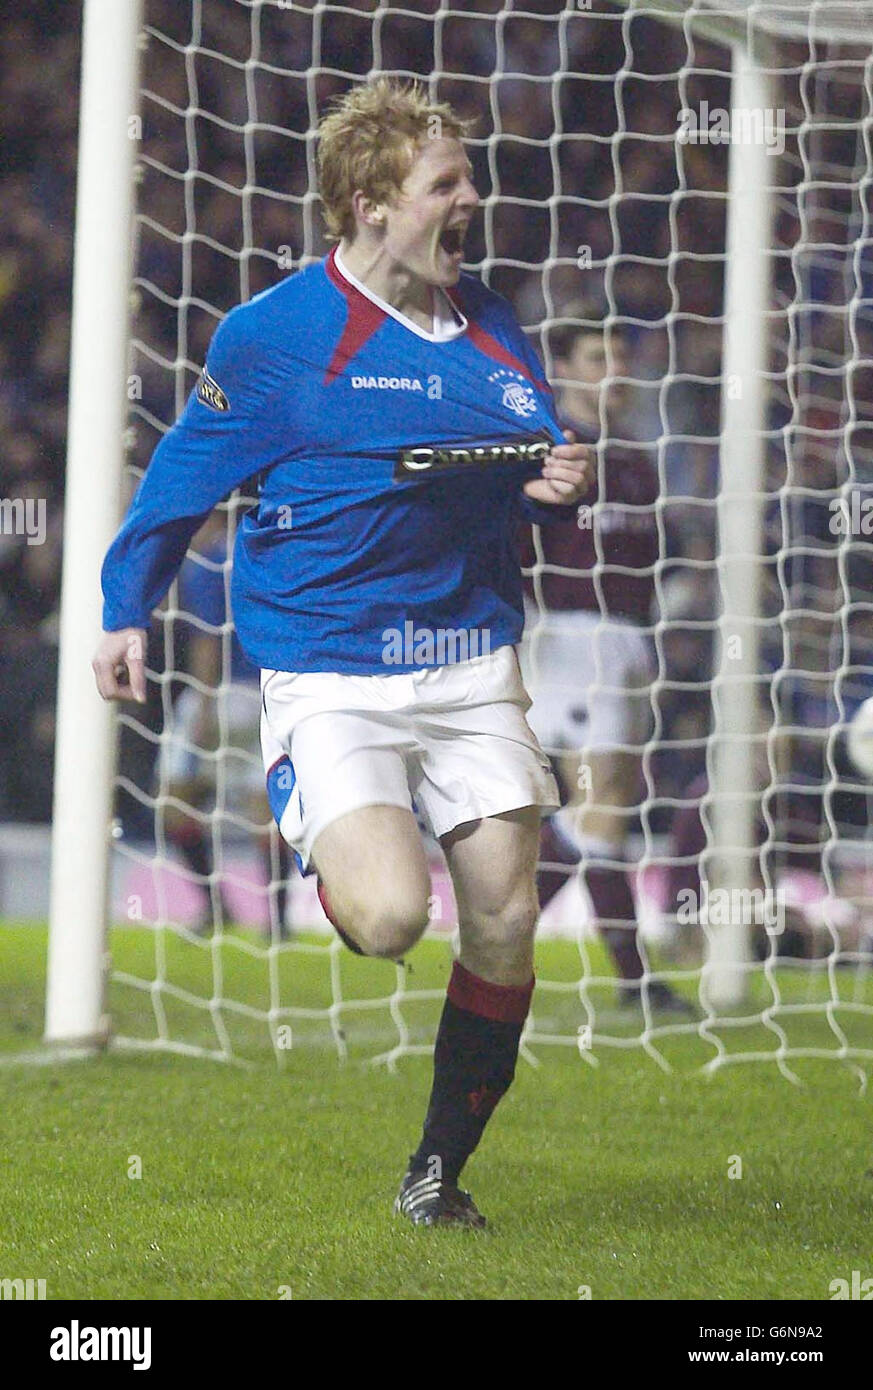 : Chris Burke celebra el segundo gol de los Rangers contra los Corazones, durante su partido de la Premiership Escocesa del Banco de Escocia en el estadio Ibrox de los Rangers en Glasgow. Foto de stock